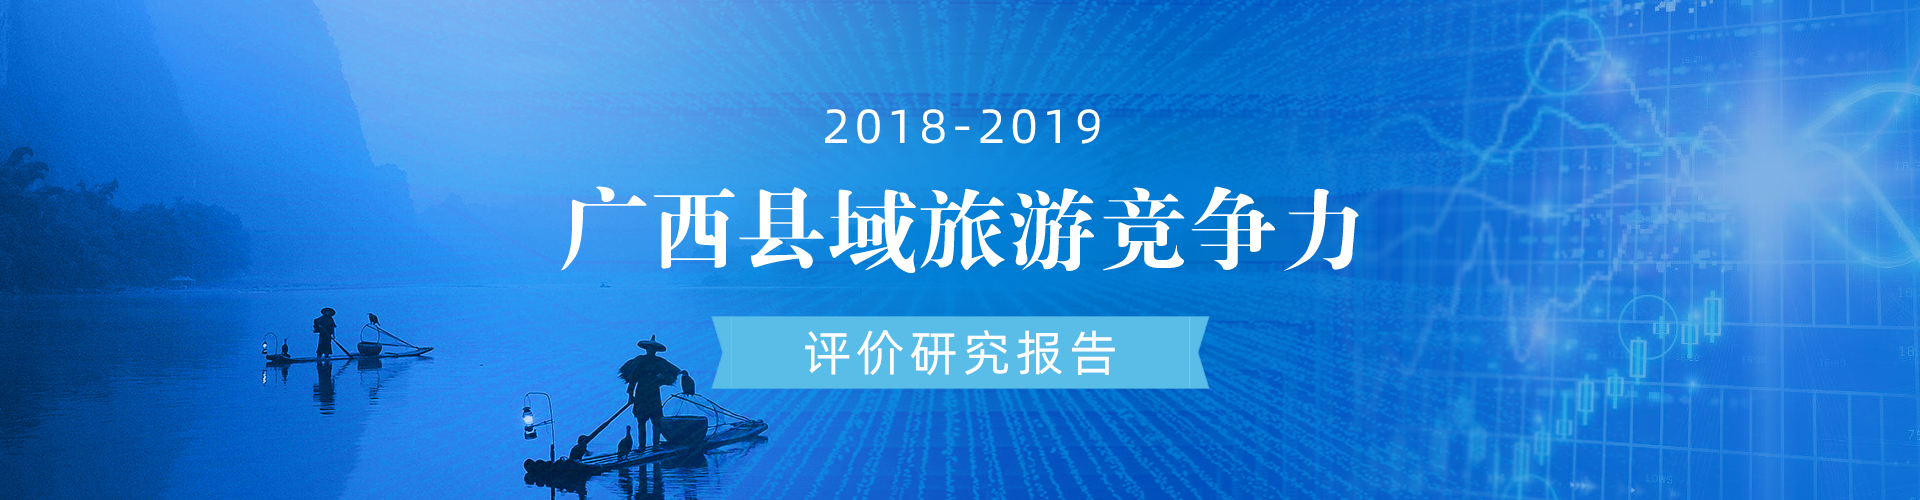 2018-2019年度广西县域旅游竞争力评价研究报告专题